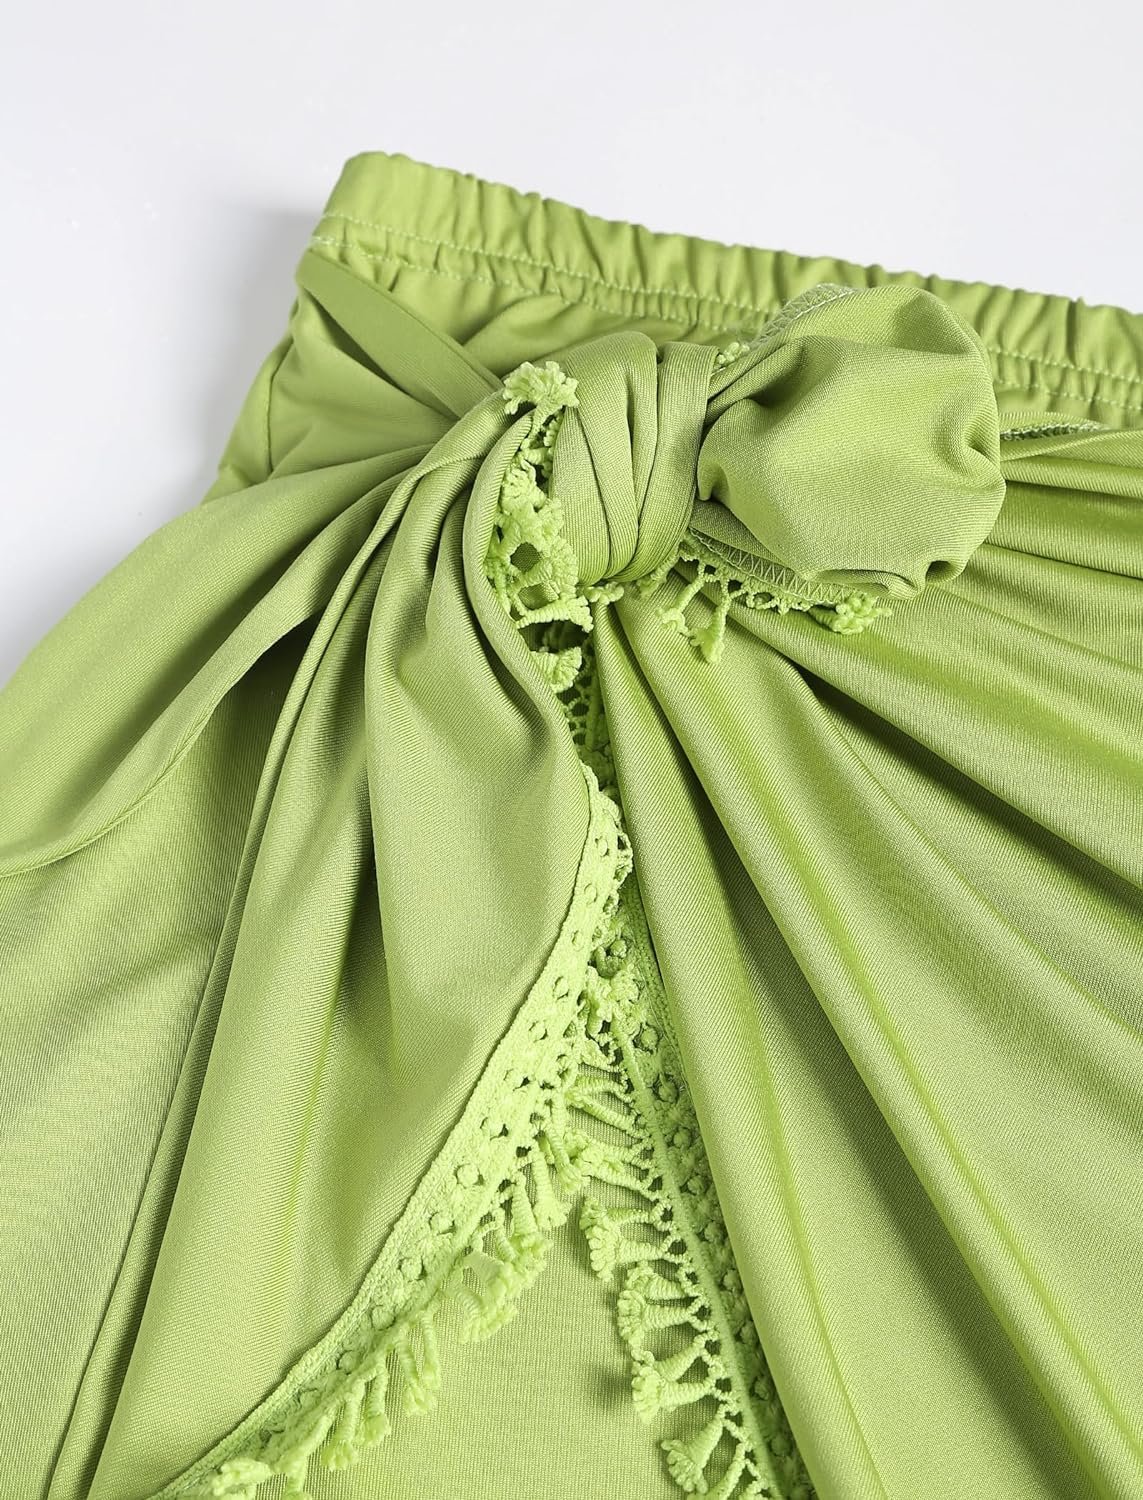 ZAFUL Slit Skirt for Women Boho Print Tie Side Wrap Tassel Casual Beach Mini Skirt